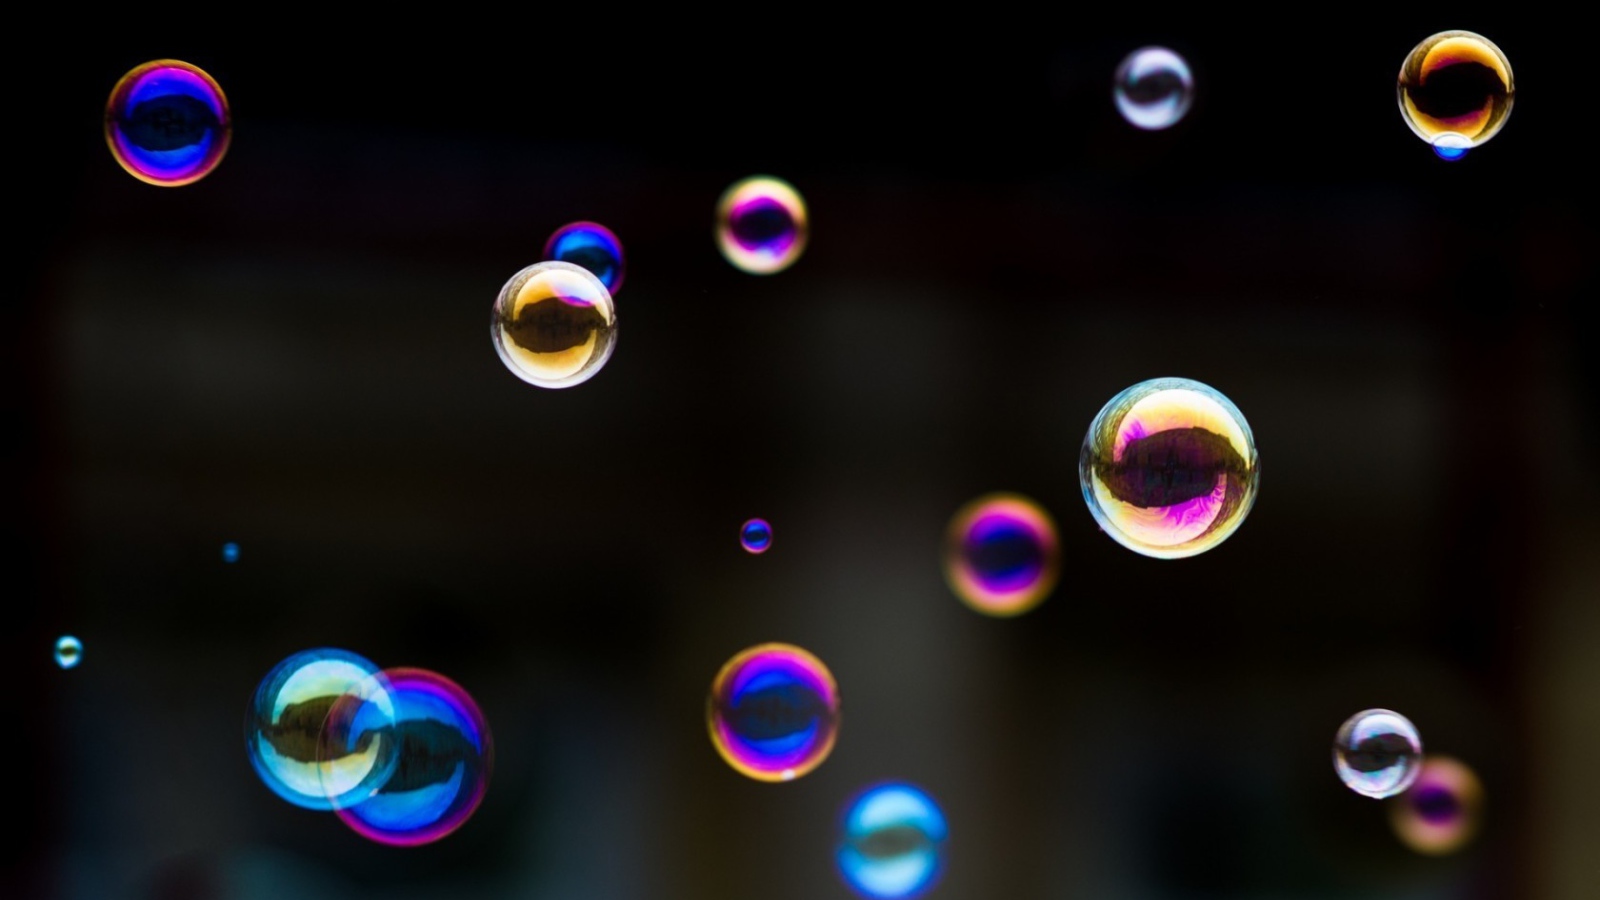 Multicolored bubbles